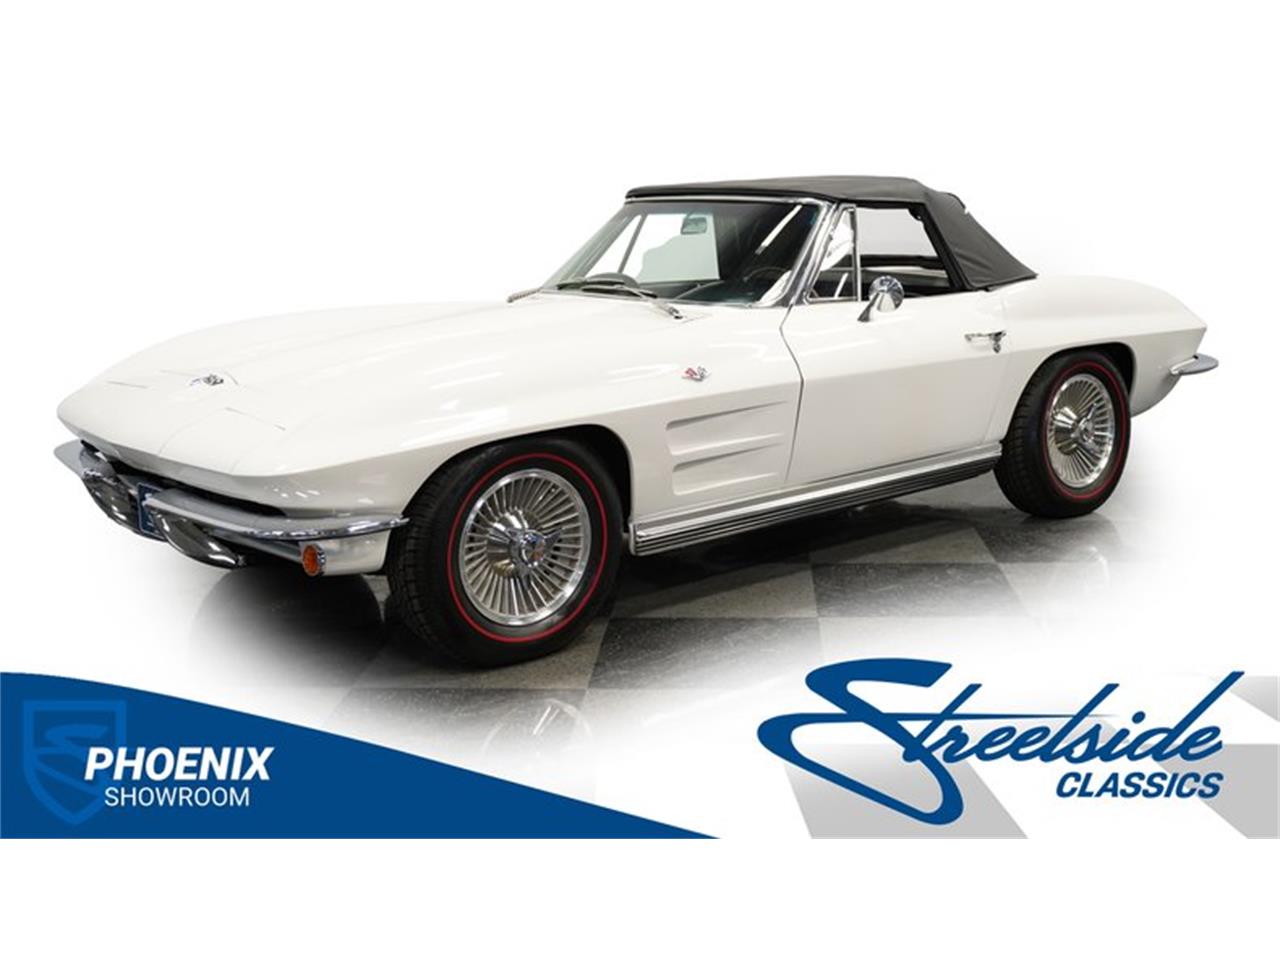 For Sale: 1964 Chevrolet Corvette in Mesa, Arizona for sale in Mesa, AZ